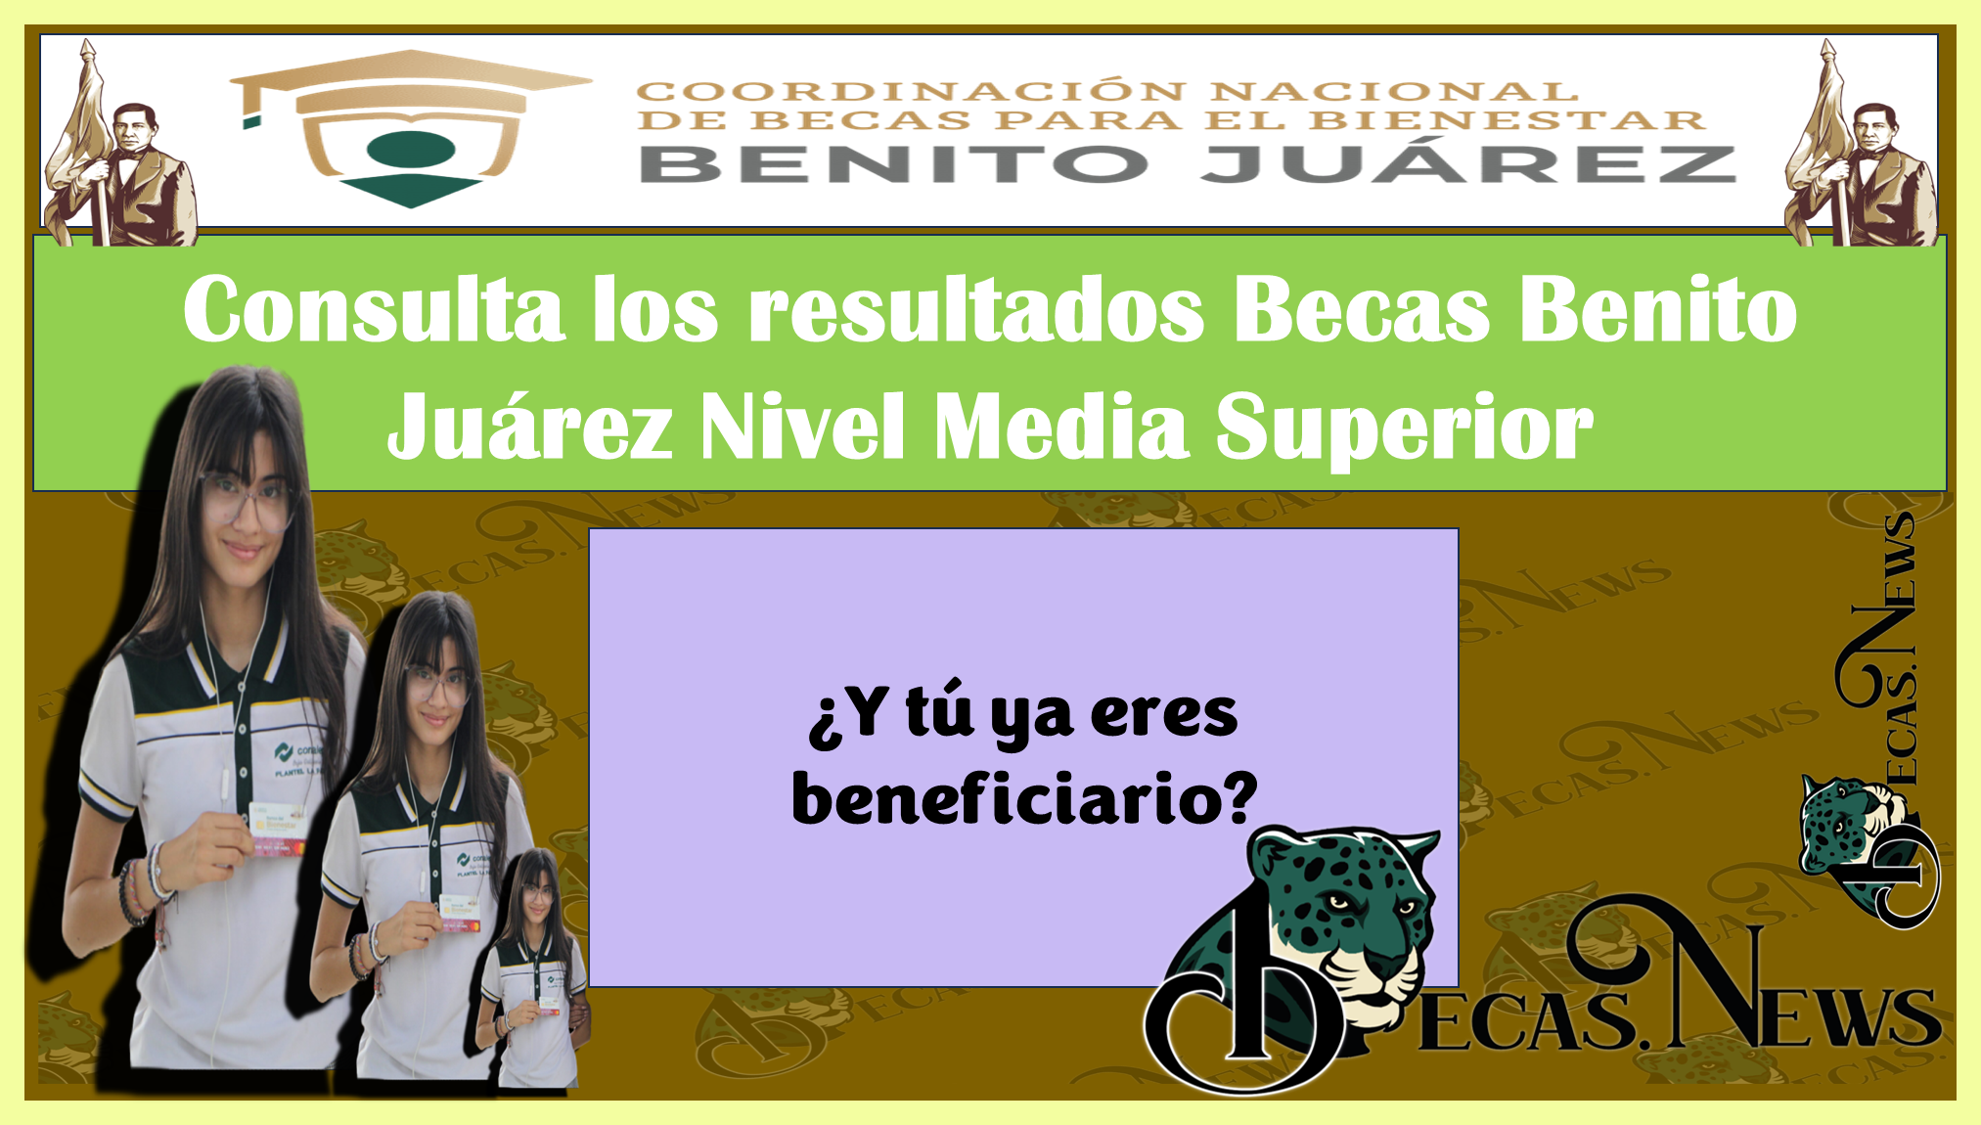 Consulta en los Resultados Becas Benito Juárez Nivel Media Superior… ¿Y tú ya eres beneficiario?